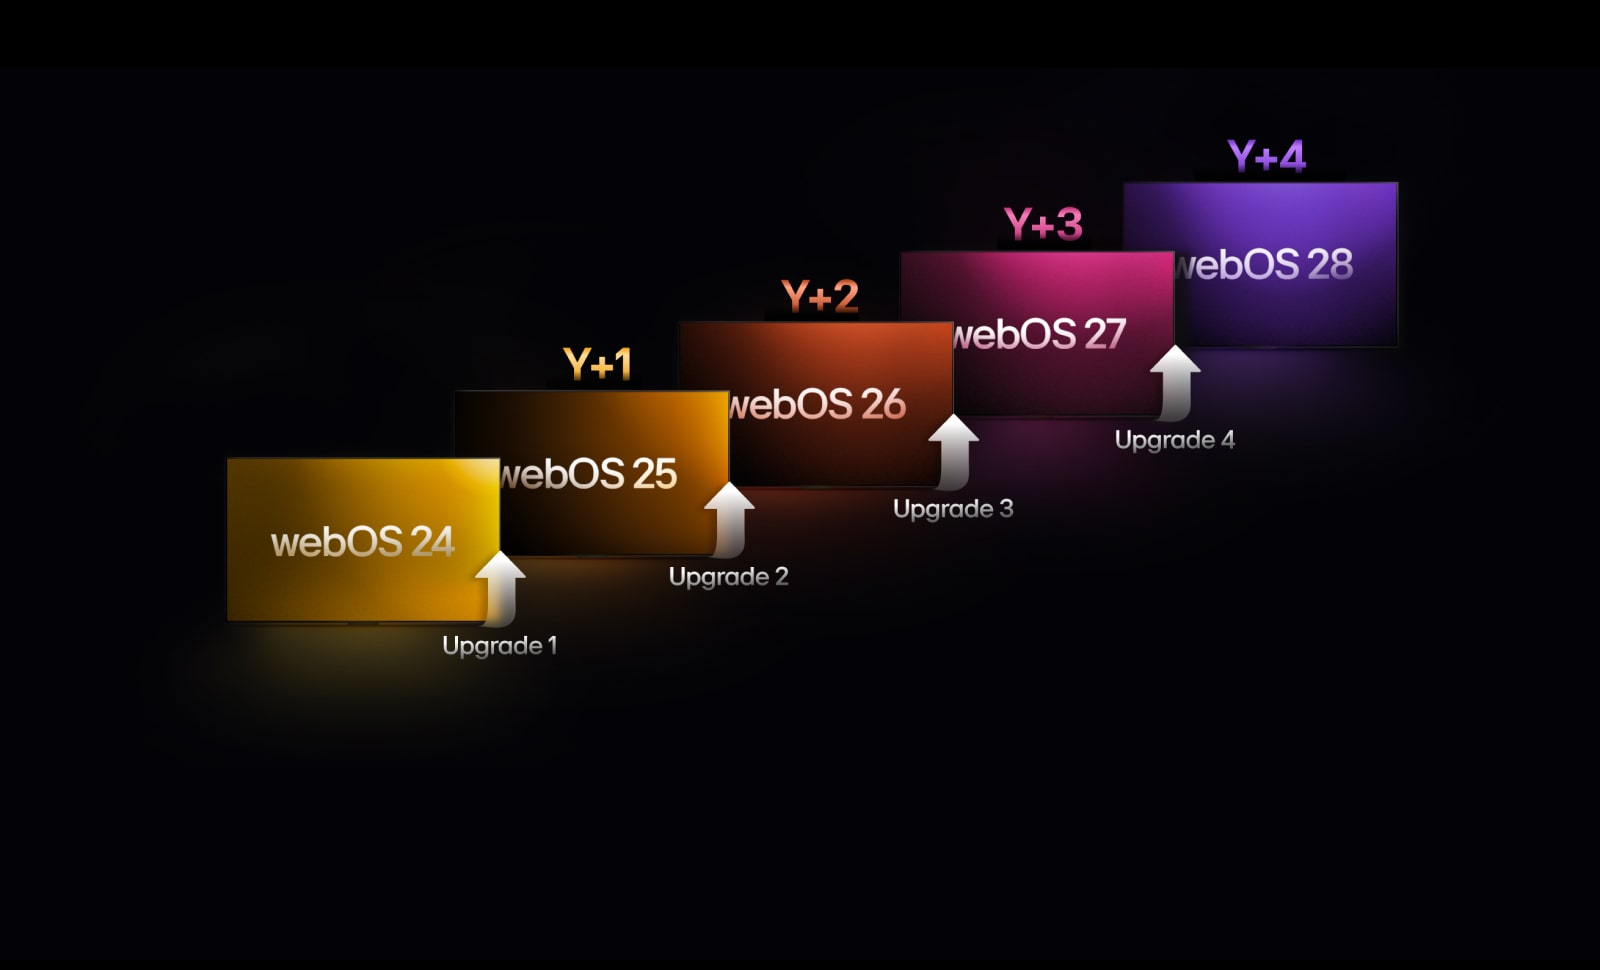 پنج مستطیل به رنگ‌های متفاوت بصورت نامتقابل روبه‌بالا هستند، هر کدام برچسب یک سال از "webOS 24" تا "webOS 28" را دارند. پیکان‌های روبه‌بالا بین مستطیل‌ها هستند و برچسب‌های "Upgrade 1" تا "Upgrade 4" را دارند.